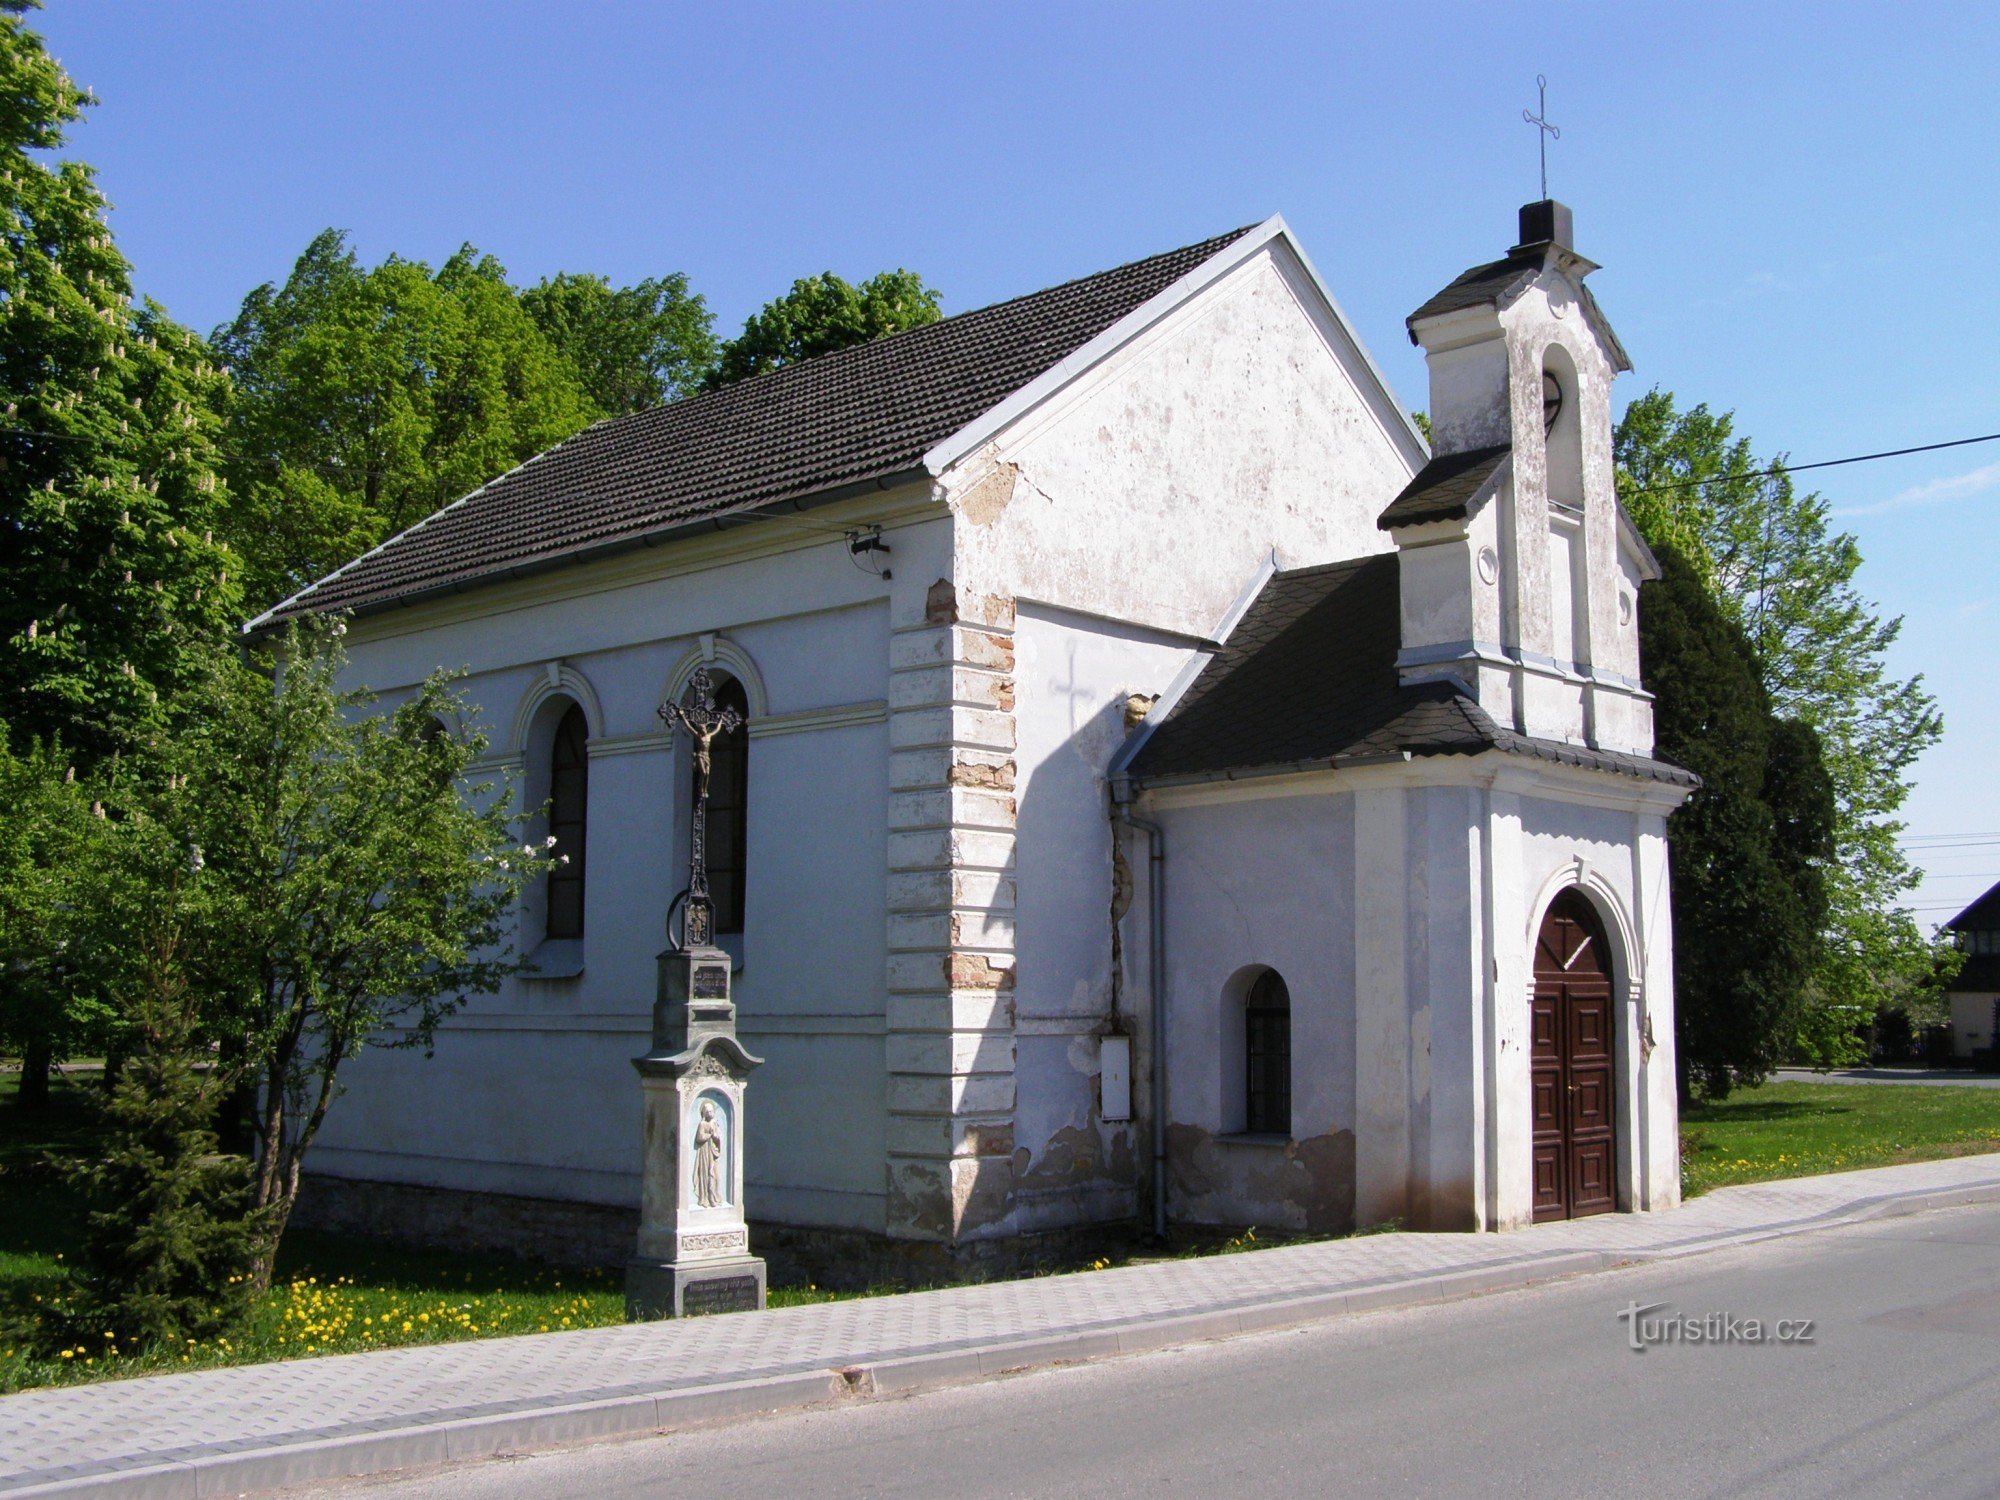 Trnov - chapelle de St. Jeanne